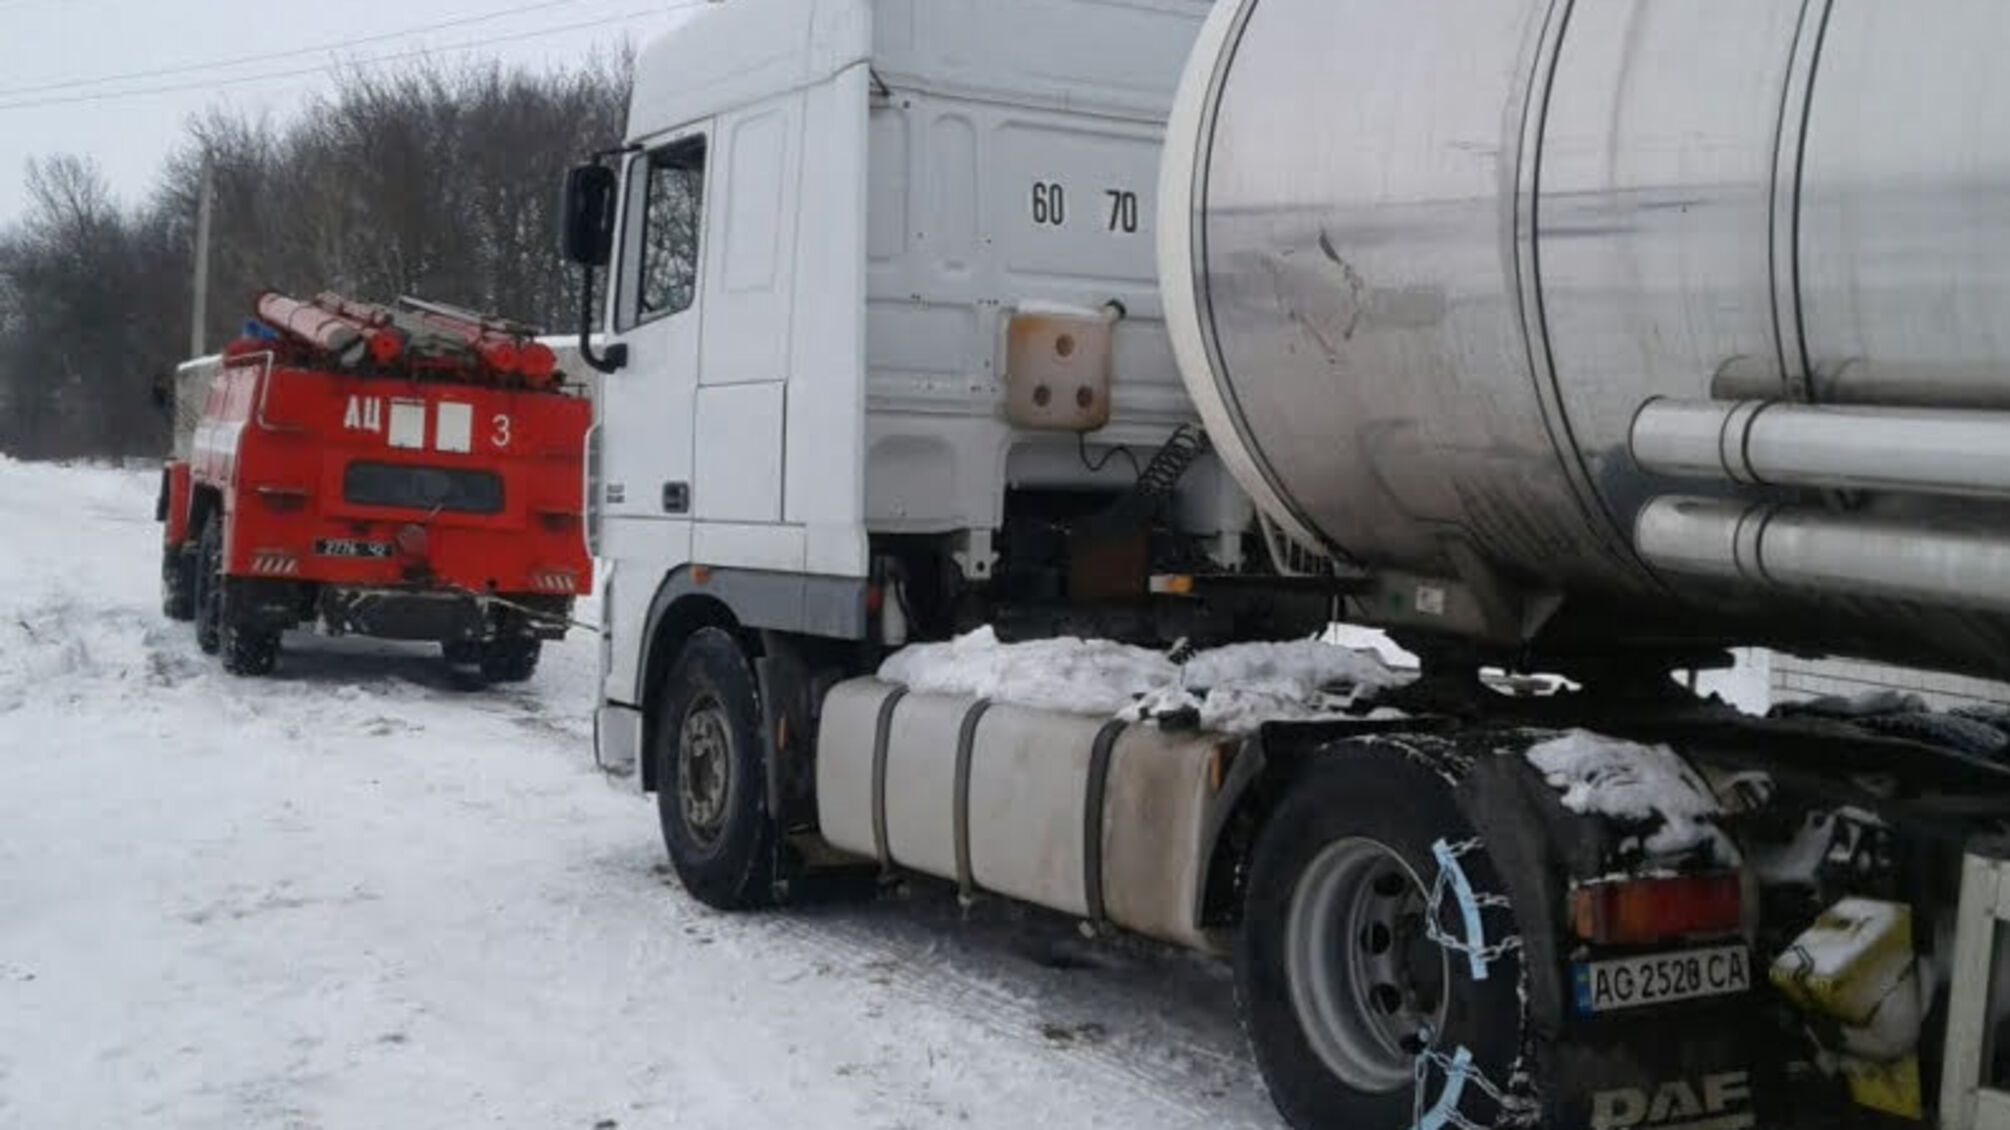 Волинська область: рятувальники відбуксирували 6 автомобілів, що опинилися у складних дорожніх умовах через щільний покрив снігу